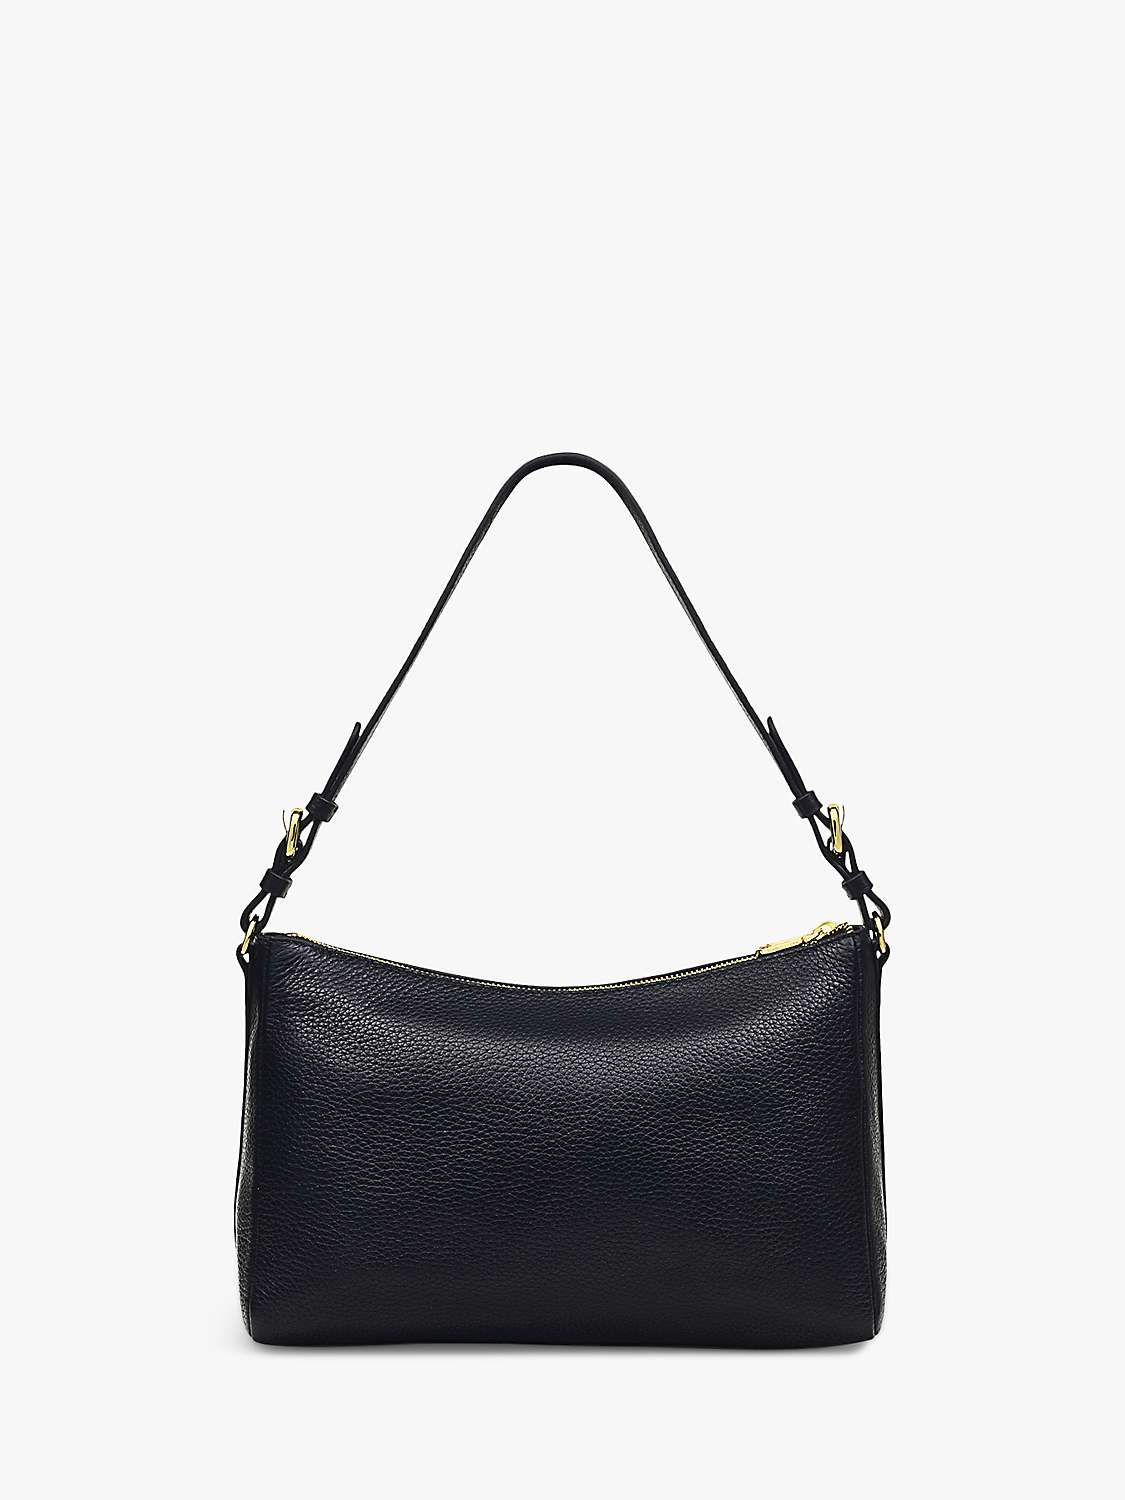 Buy Radley Dukes Place Medium Leather Shoulder Bag Online at johnlewis.com